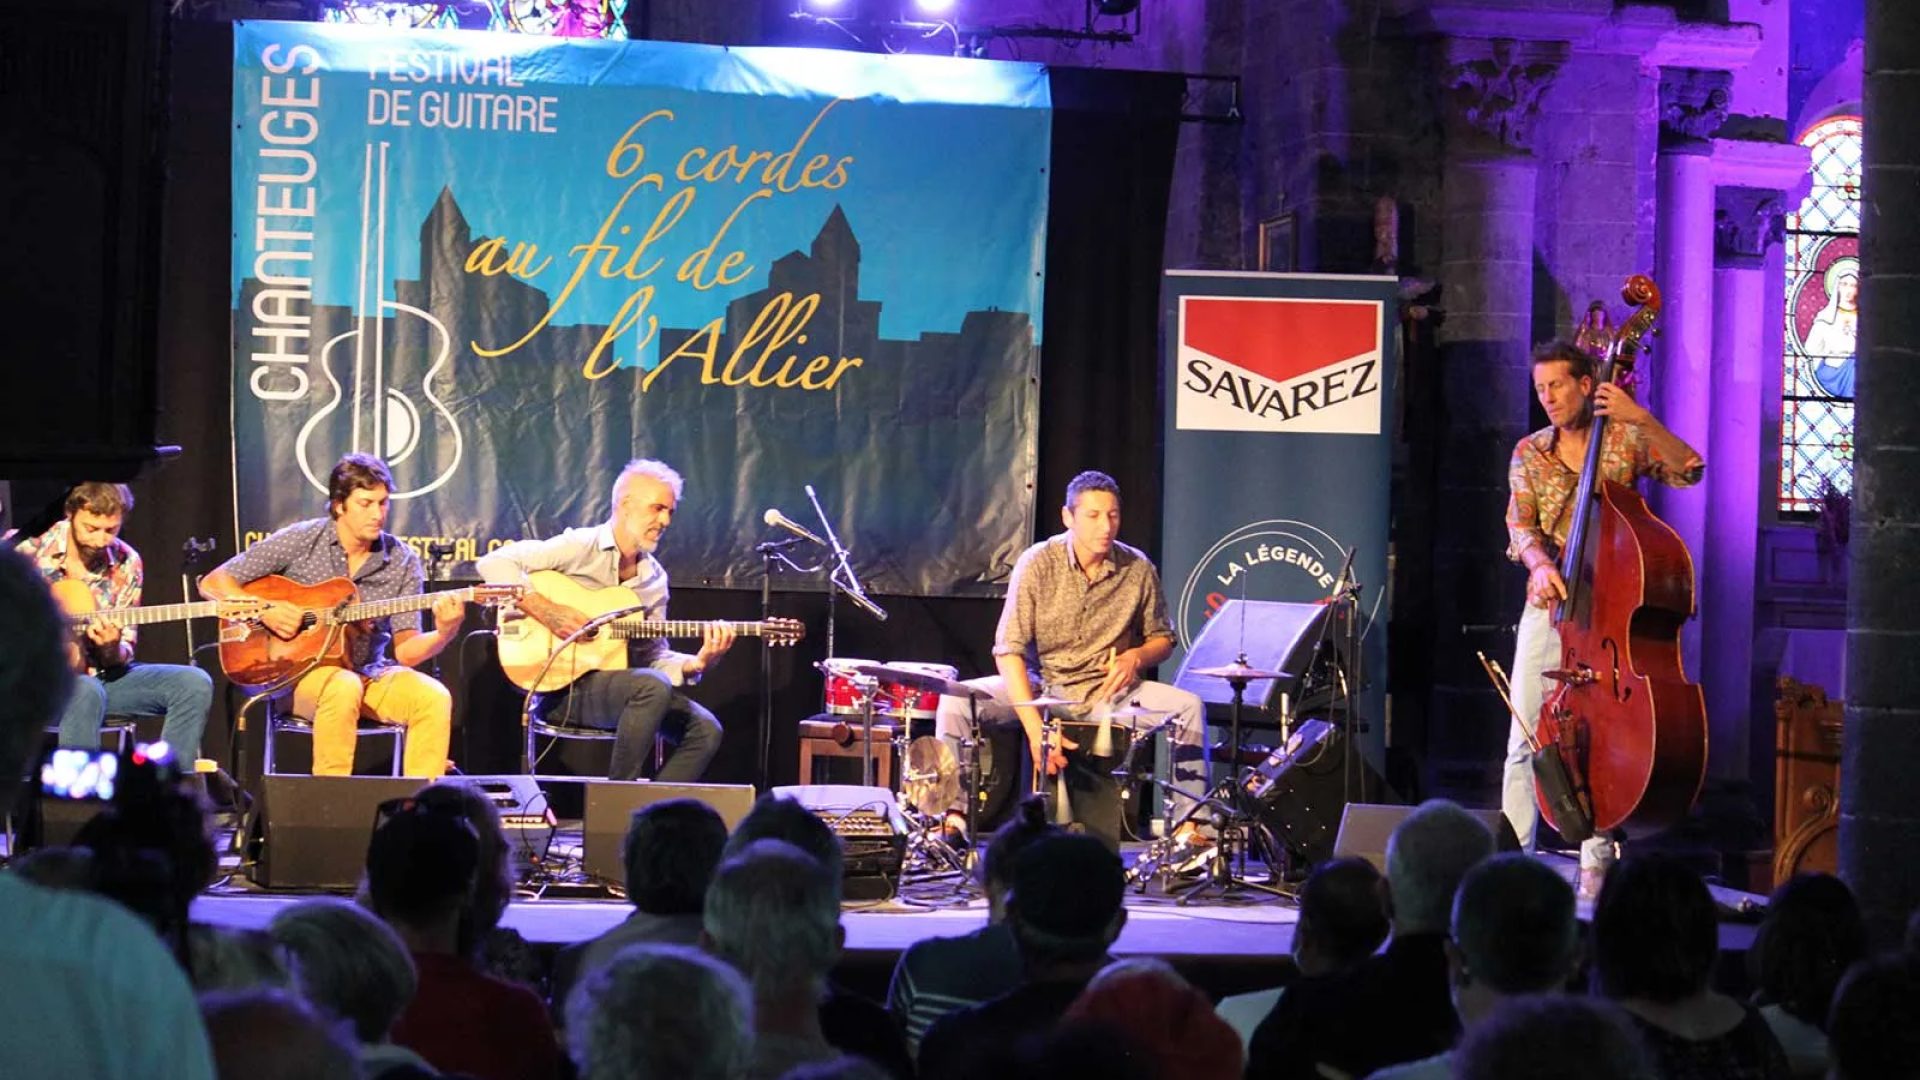 A music group performs on stage at the Six Cordes au fil de l'Allier festival in Haute-Loire, Auvergne